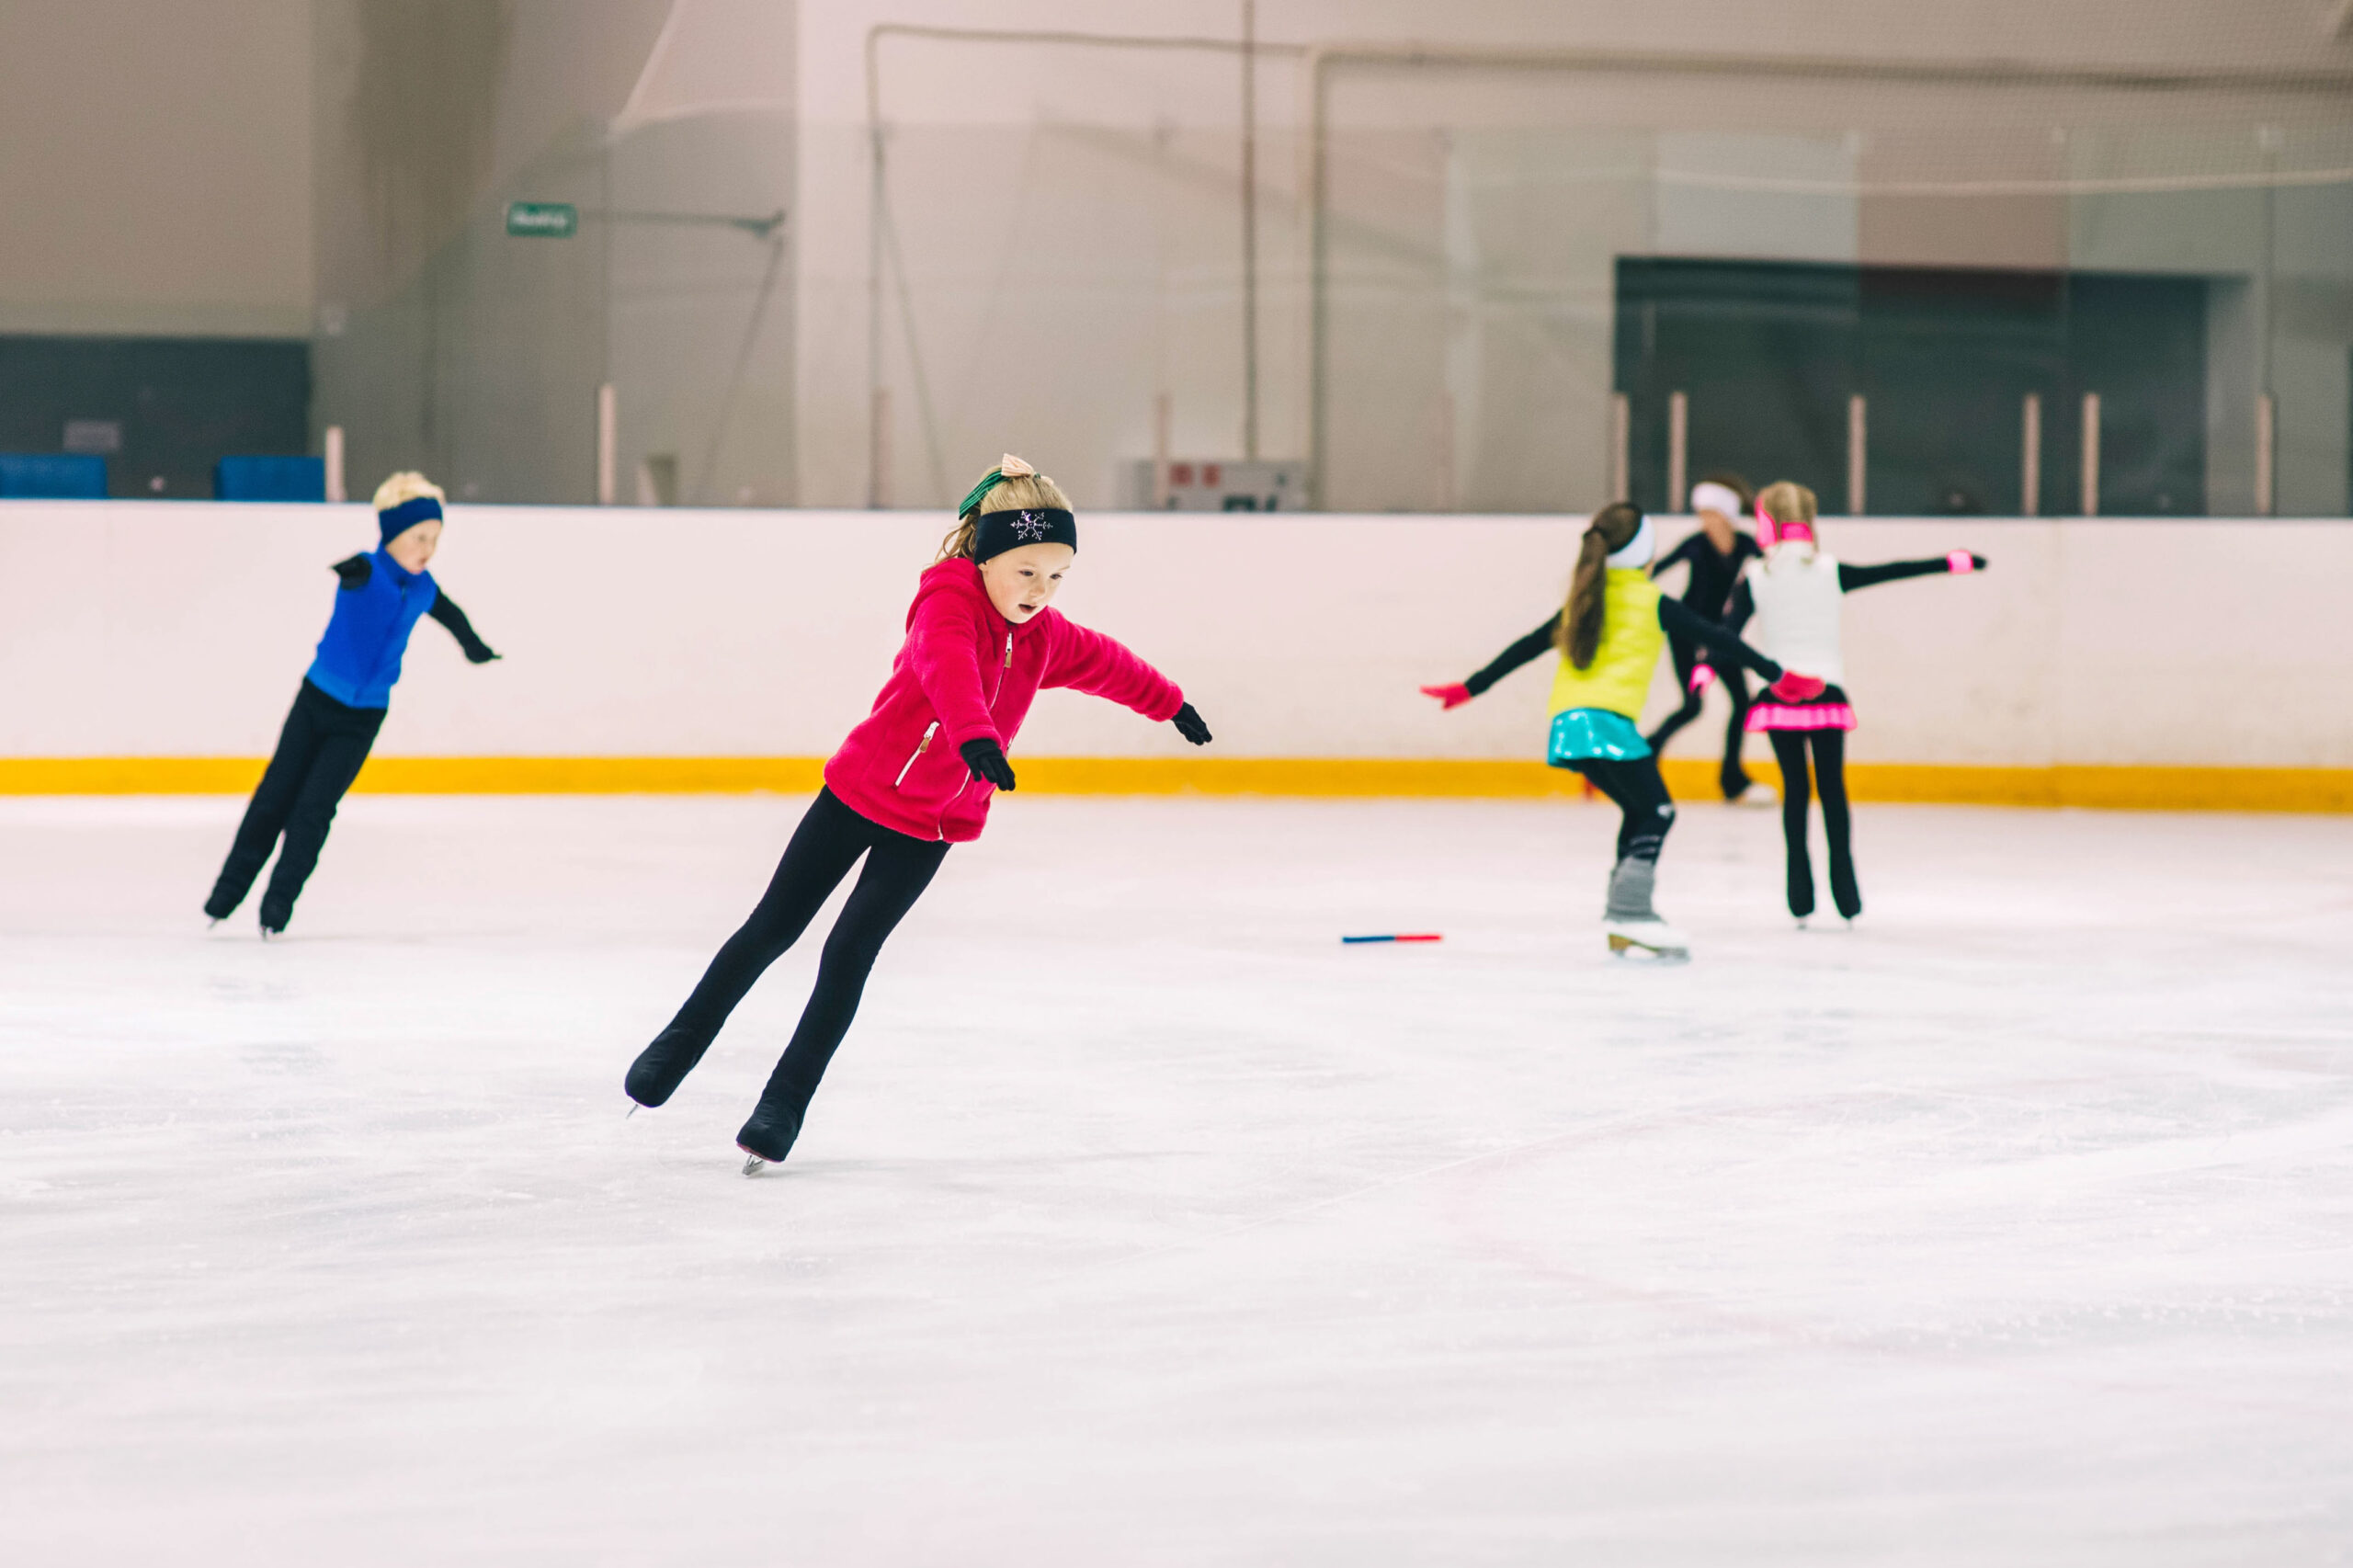 young kids learning skating skills